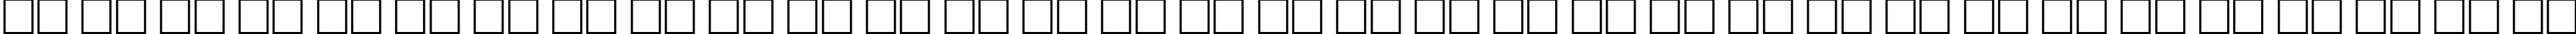 Пример написания русского алфавита шрифтом El Rio Lobo